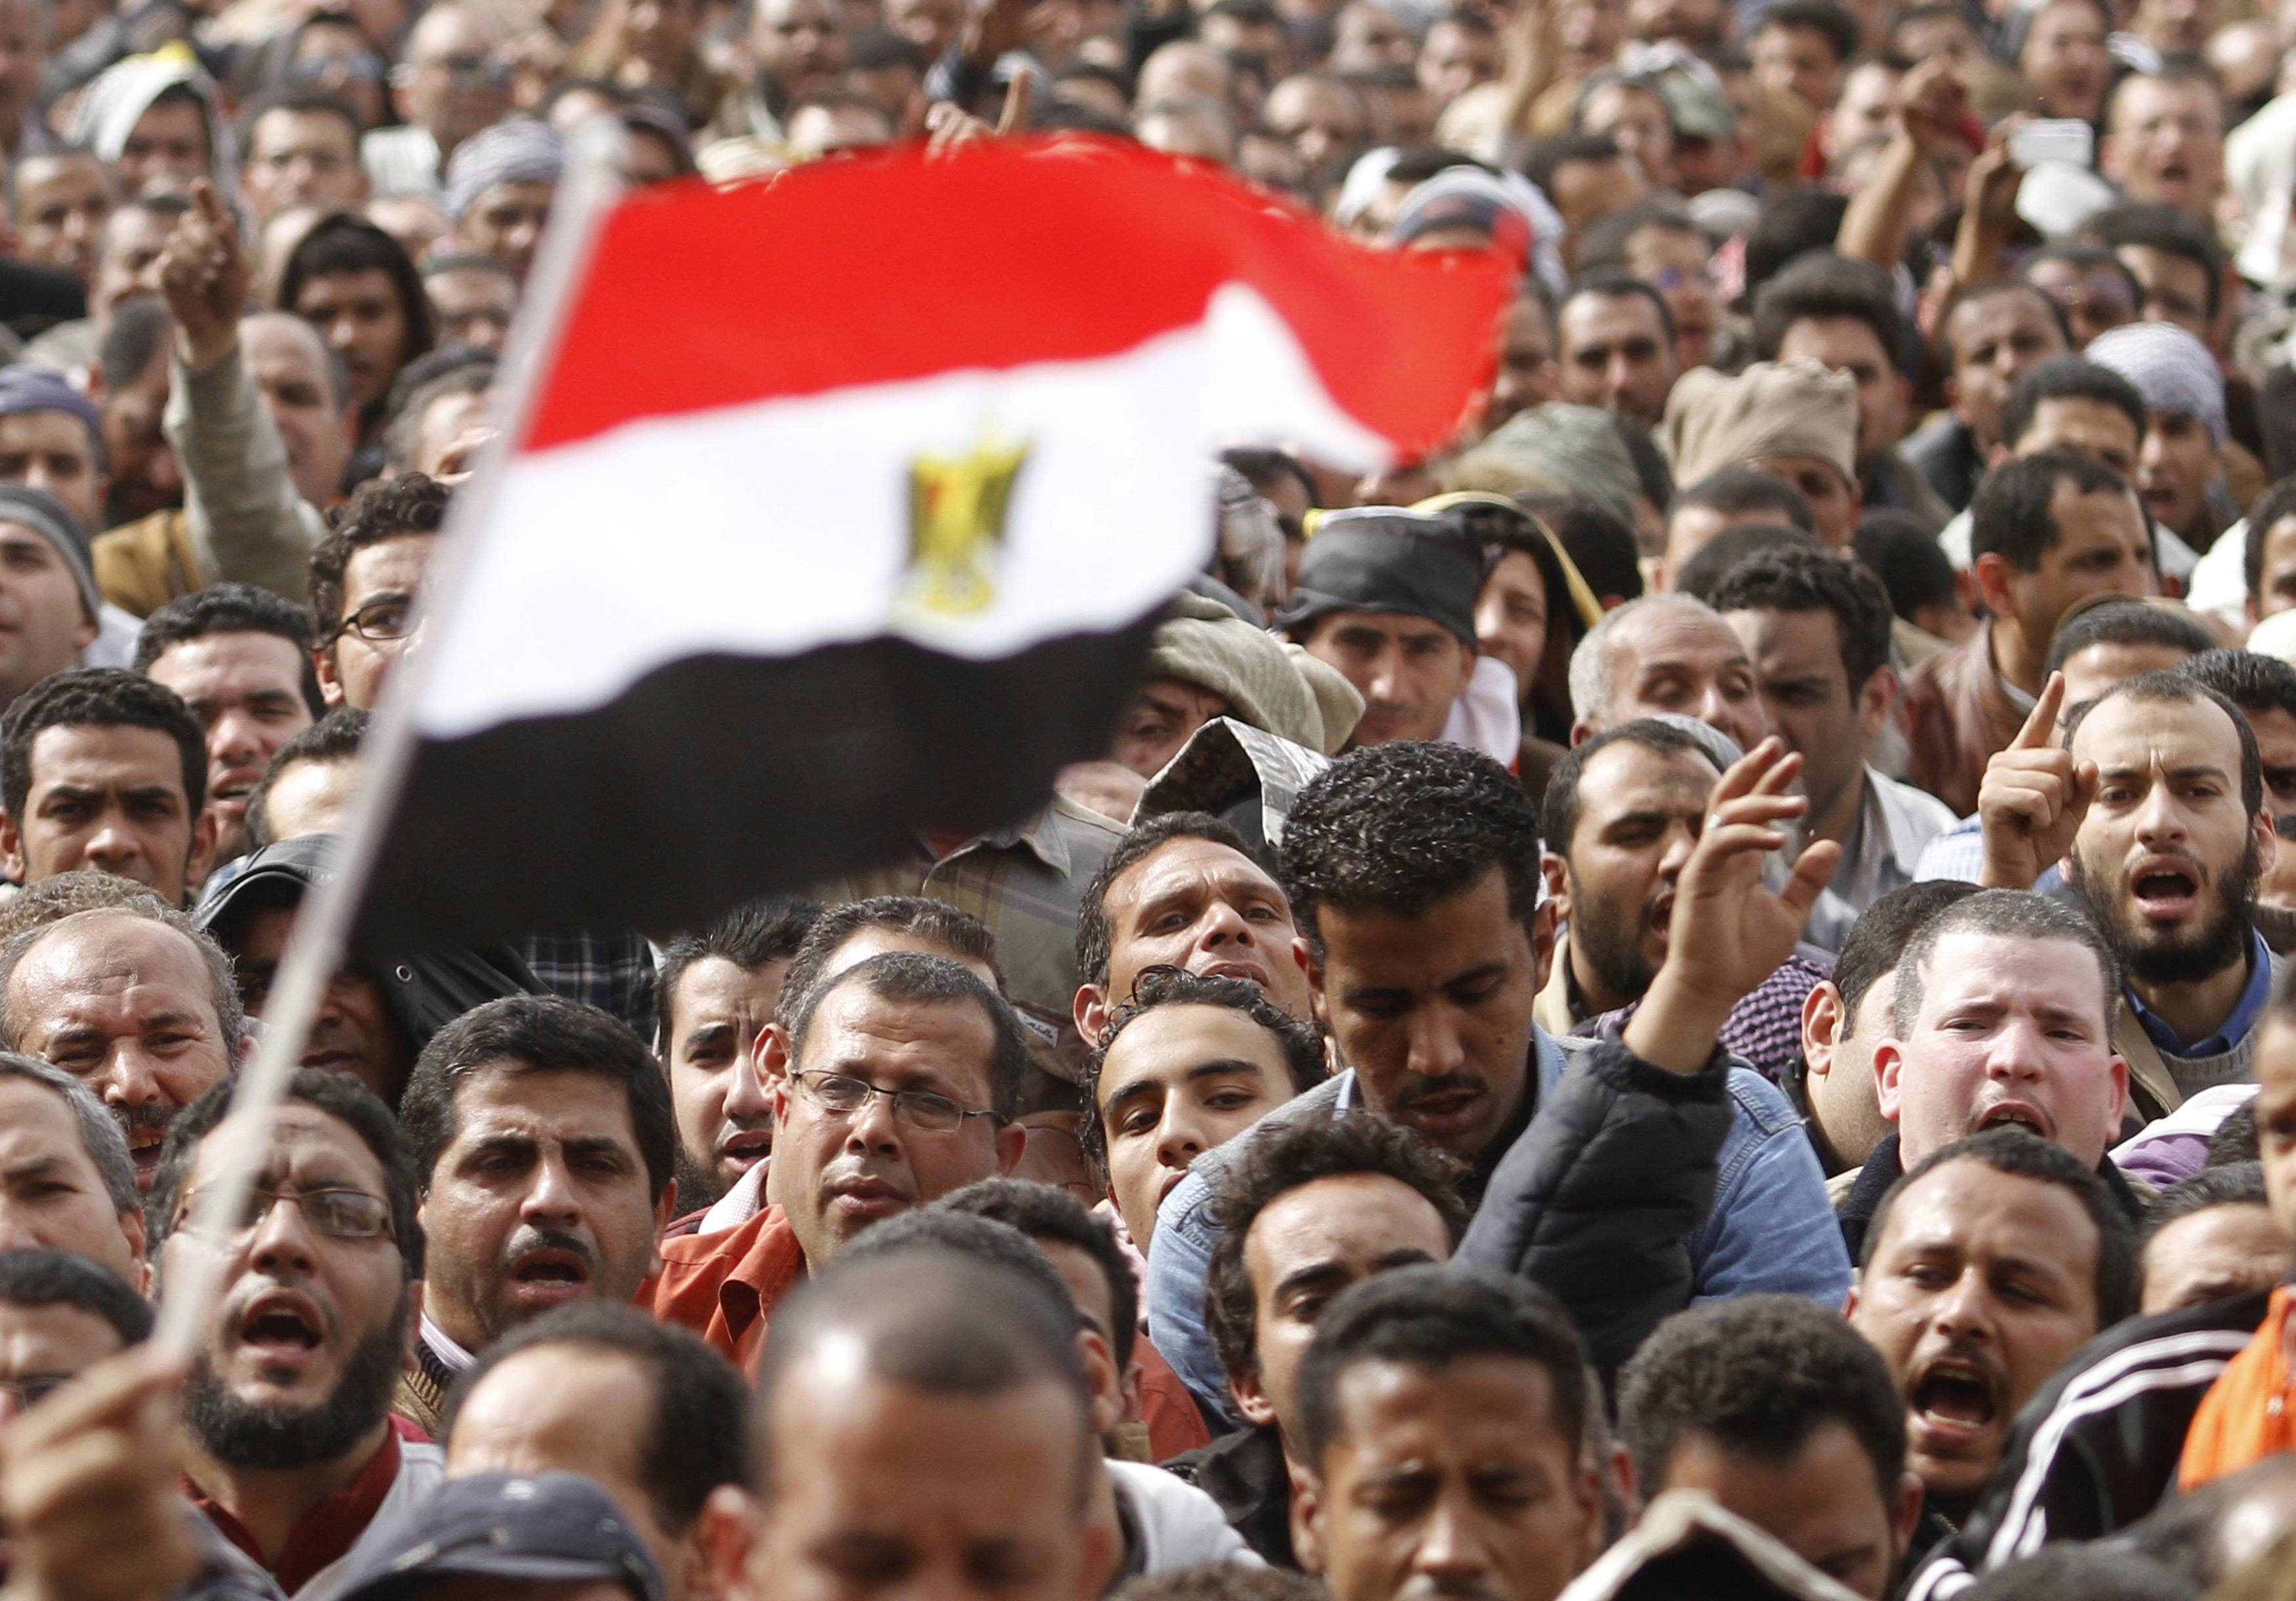 "Φύγε" φωνάζουν στον Μουμπάρακ οι διαδηλωτές. ΦΩΤΟ REUTERS